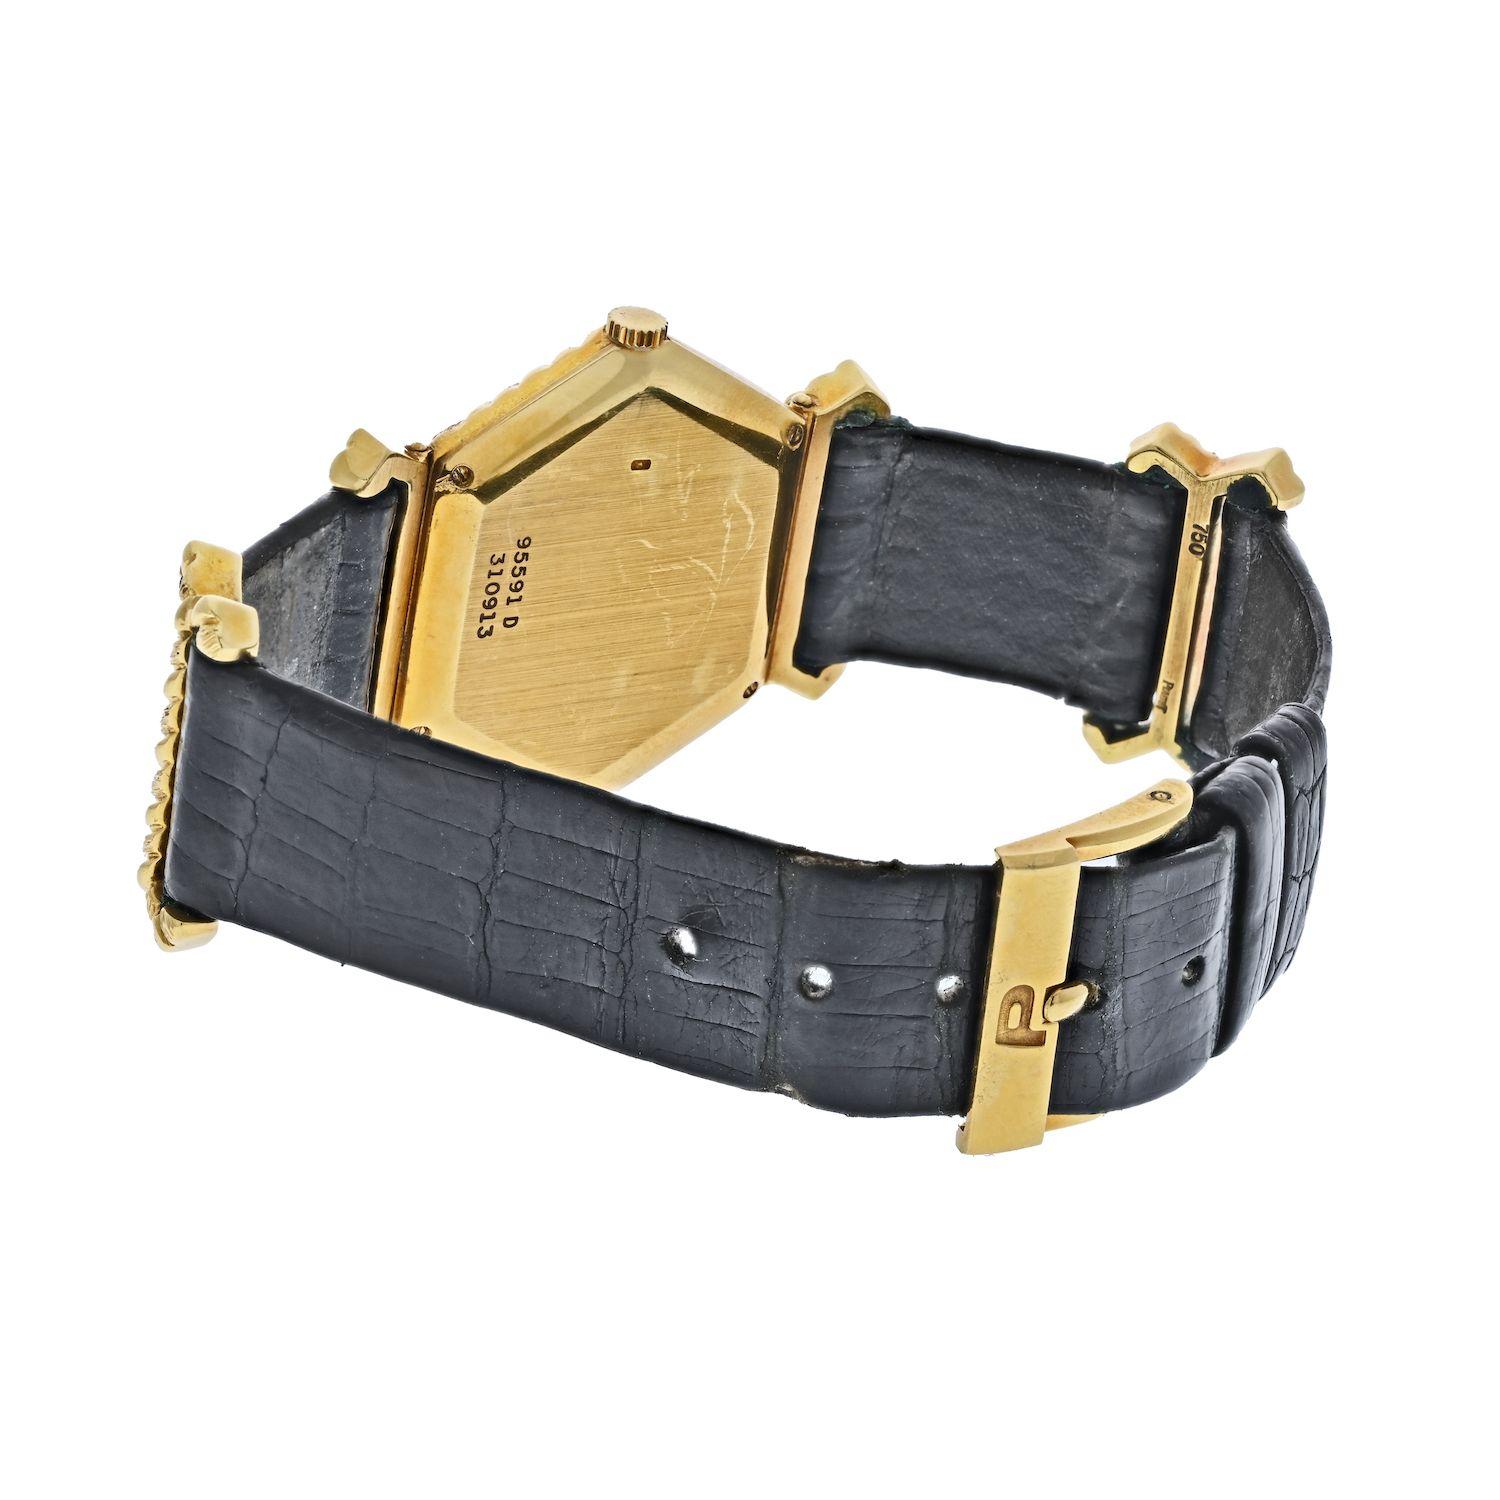 Fabriquée par Piaget vers les années 1970 en or jaune 18 carats, il s'agit d'une montre-bracelet 95591 D. Accessoire vintage parfait, pour quelqu'un qui est dans une ère rétro, des lignes épurées et la simplicité. Conçue avec un cadran hexagonal et